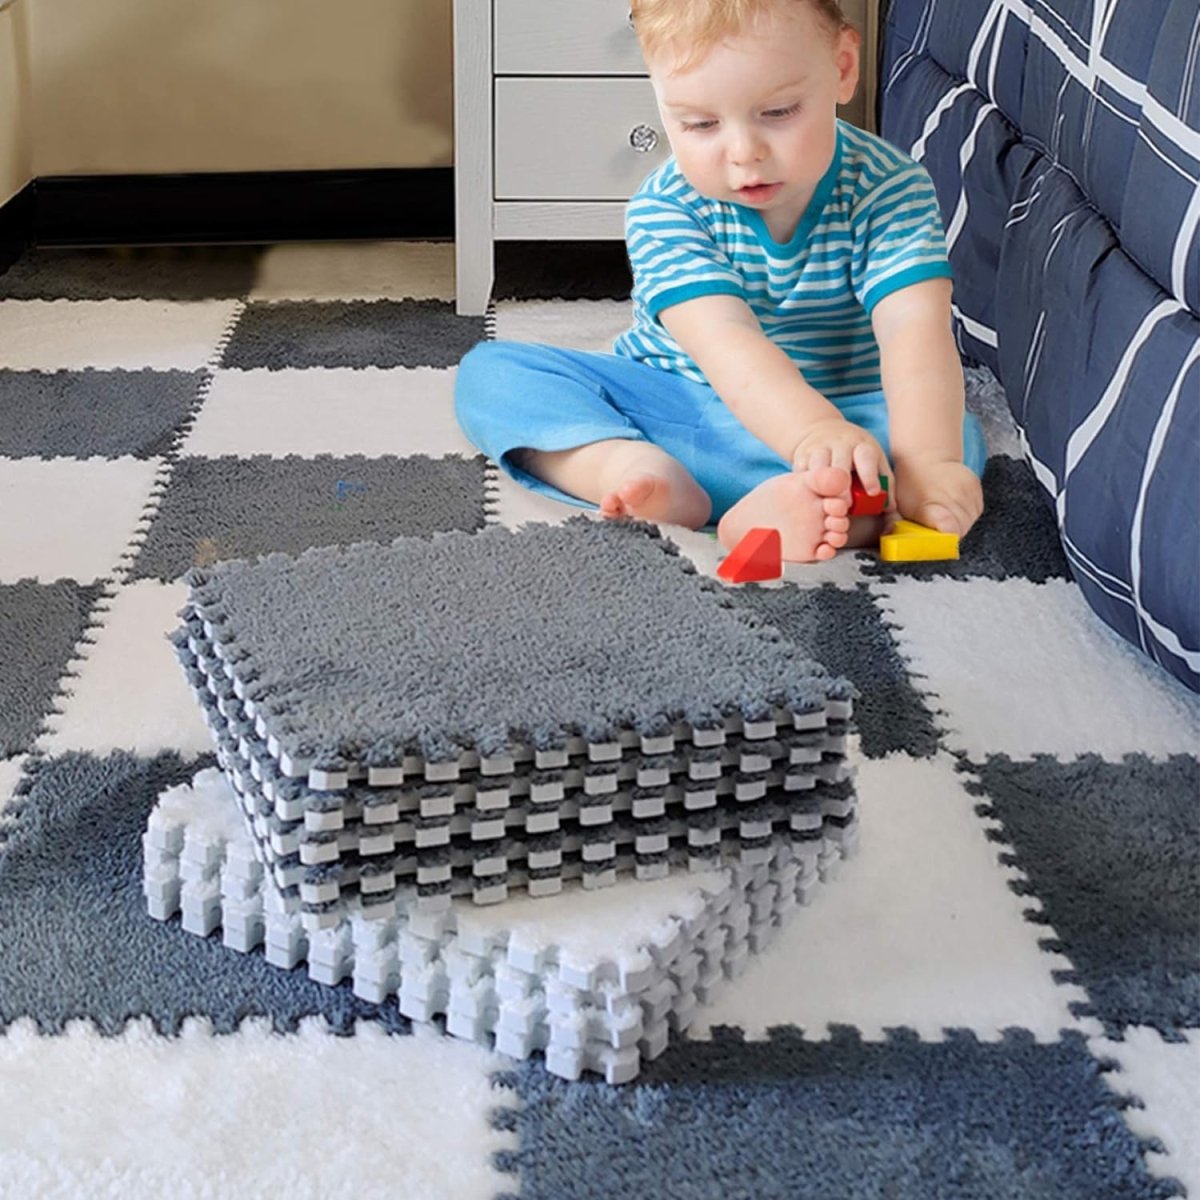 Fluffy Puzzle Floor Mat - LightsBetter